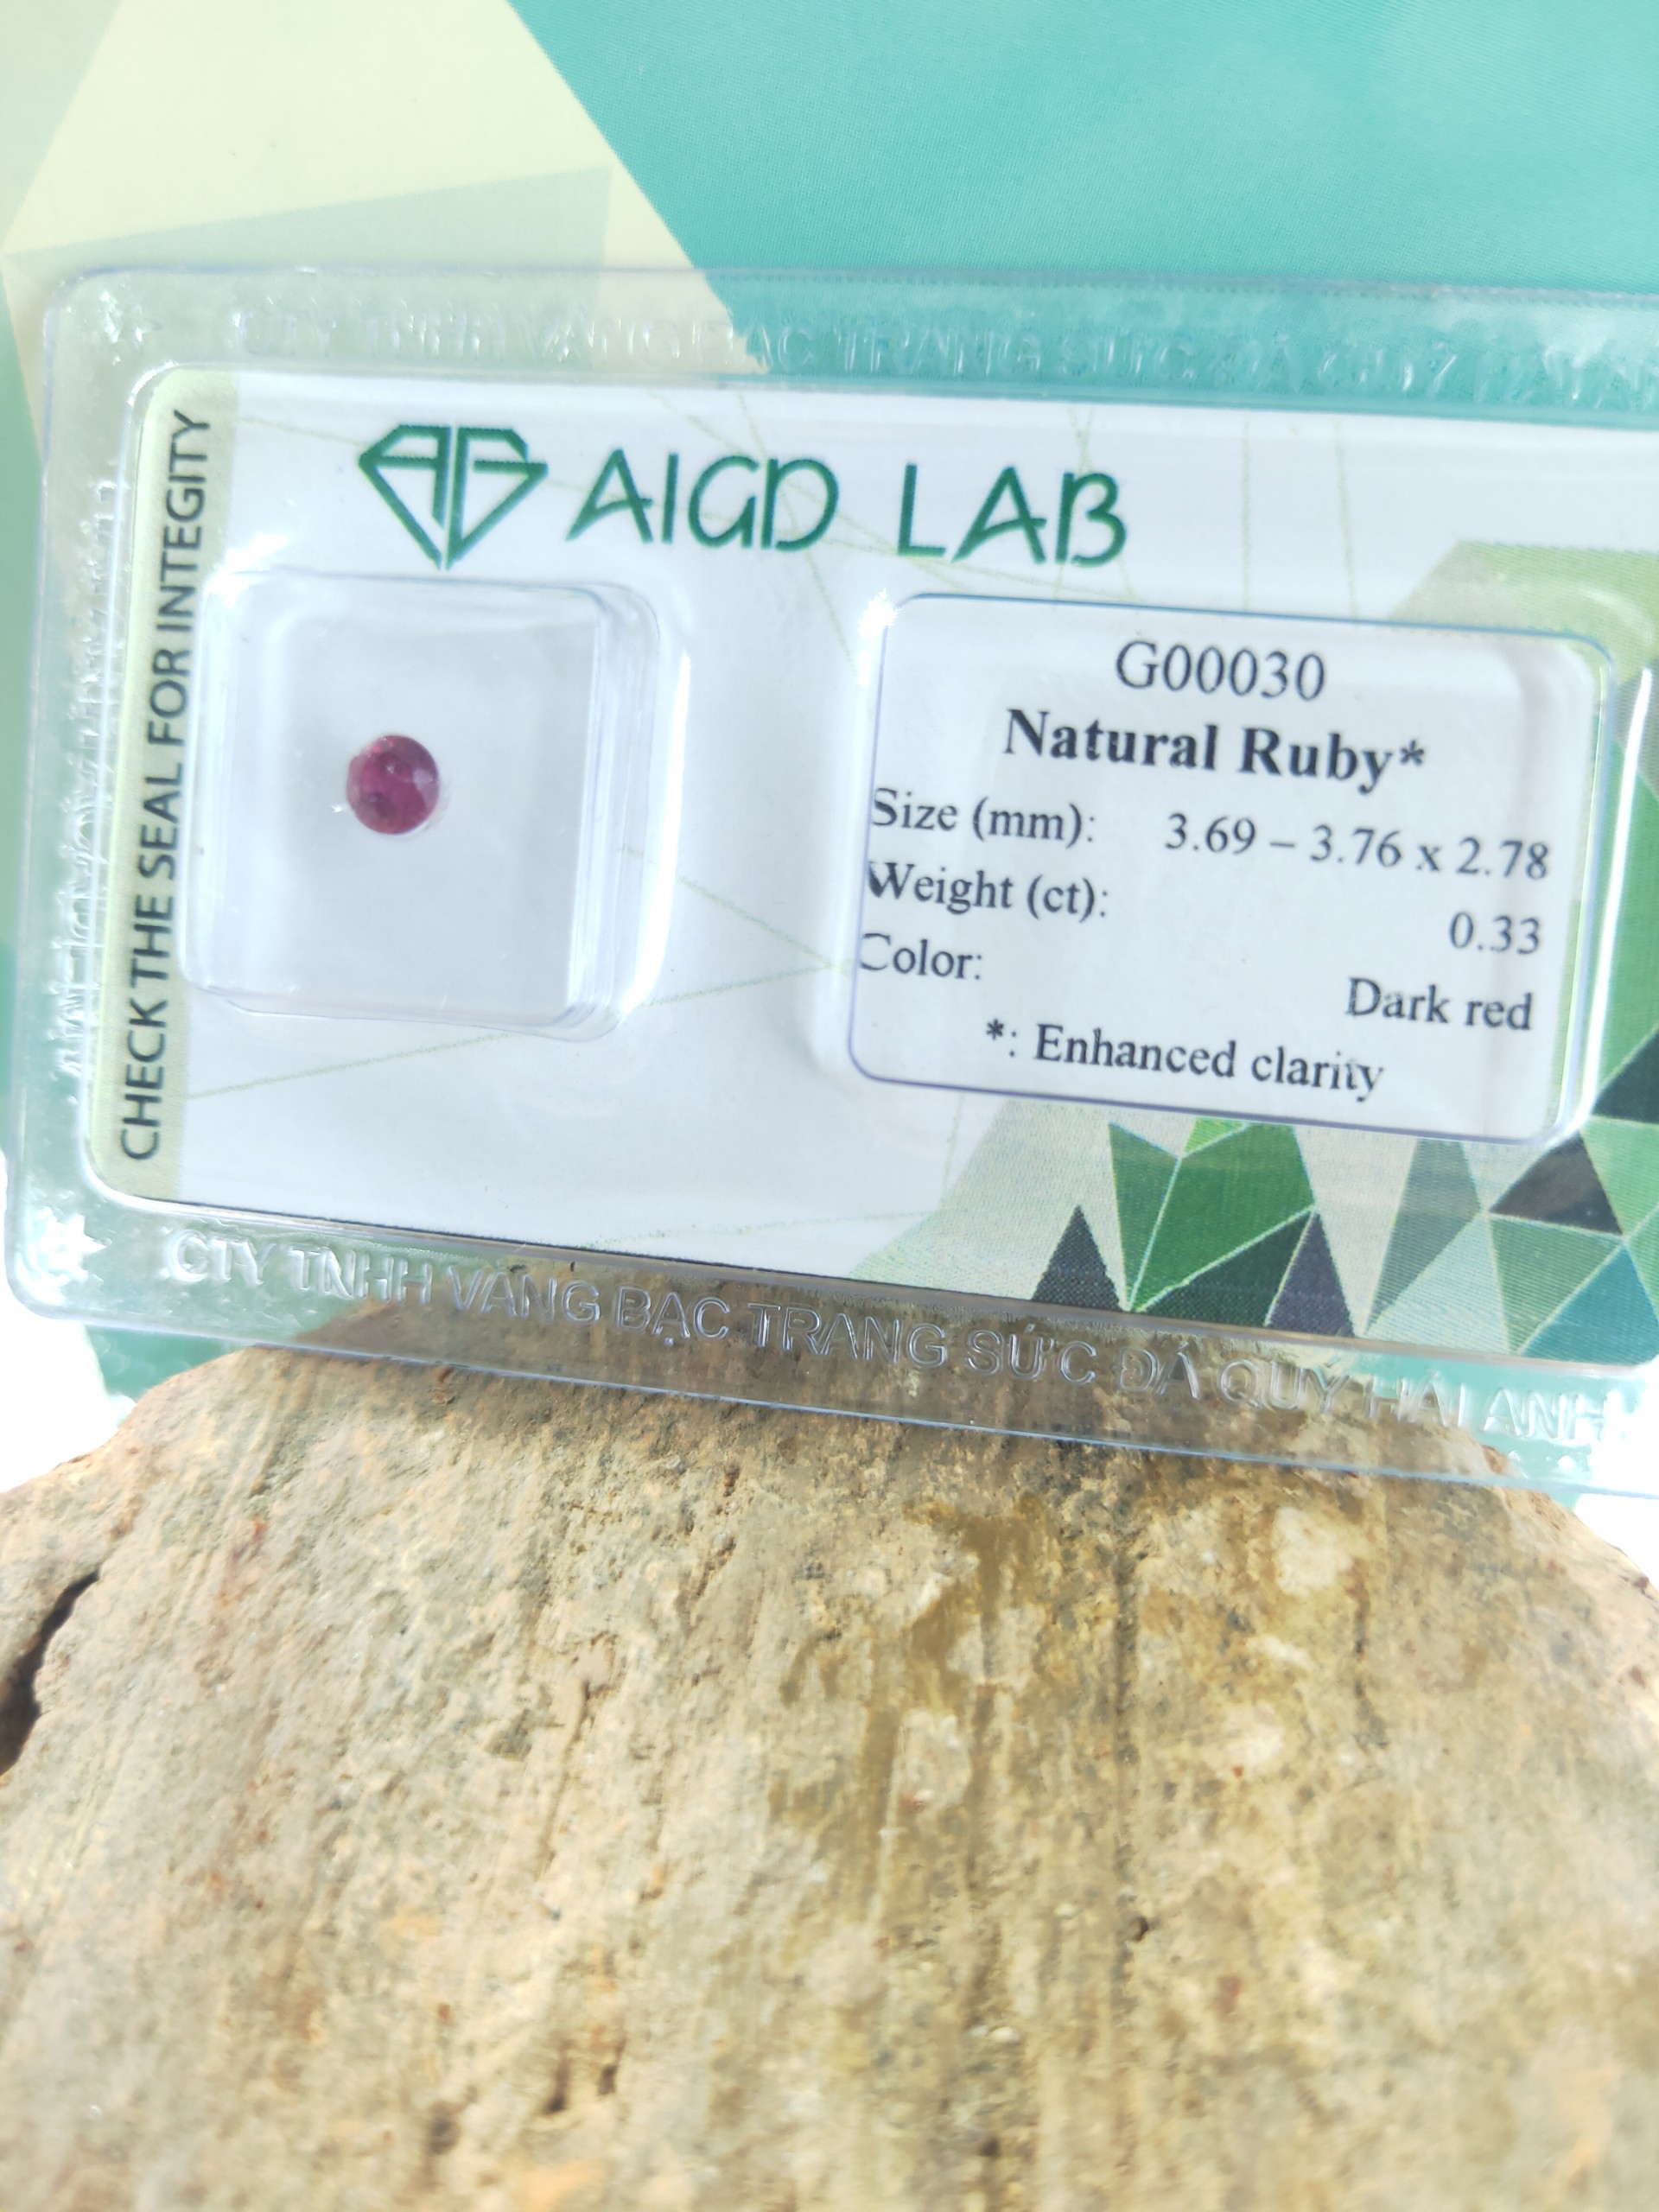 Viên đá Ruby thiên nhiên G00030